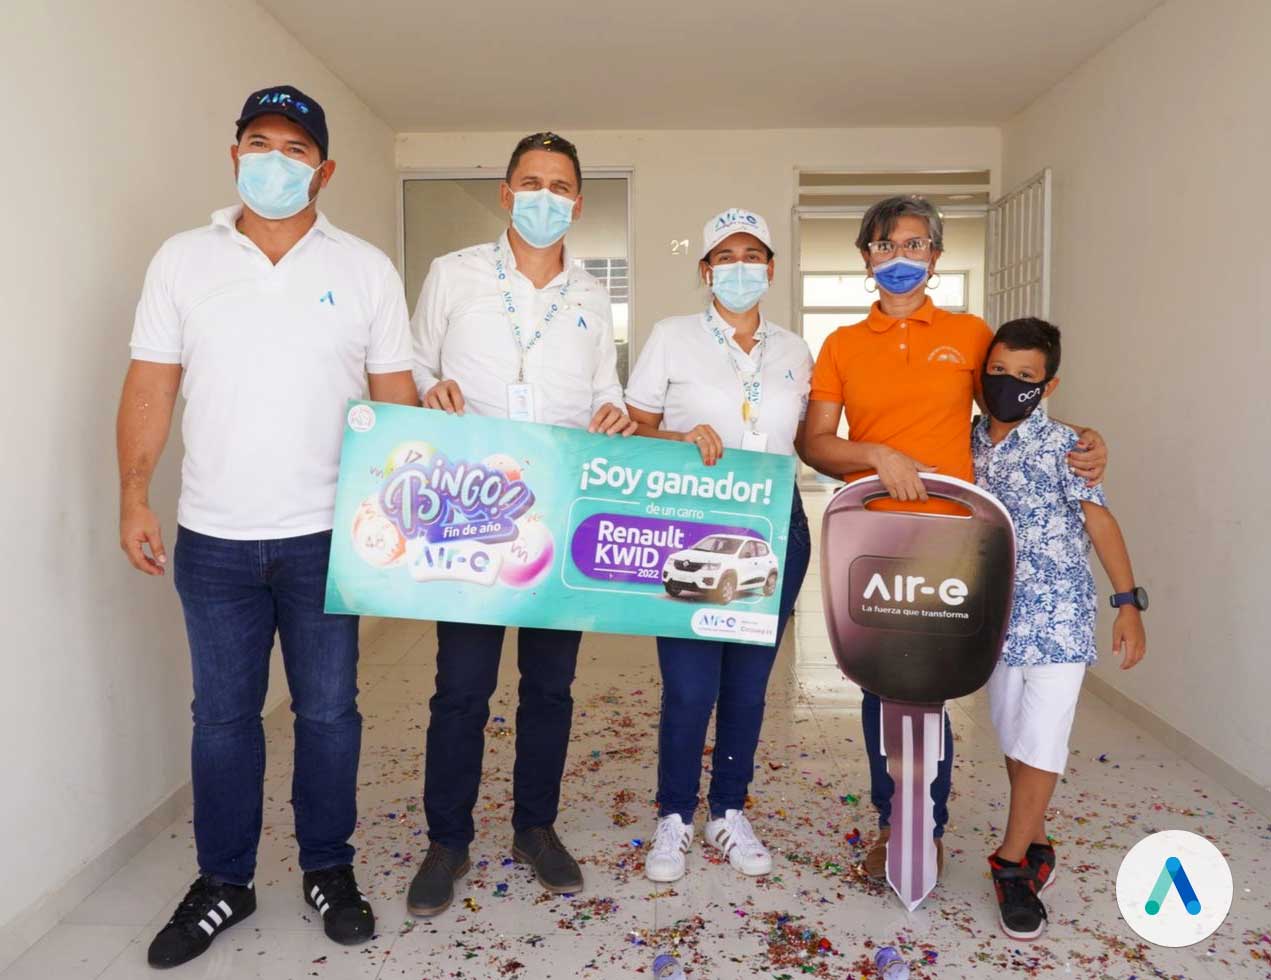 Air-e premió con un carro cero kilómetros a usuaria puntual en San Juan del Cesar